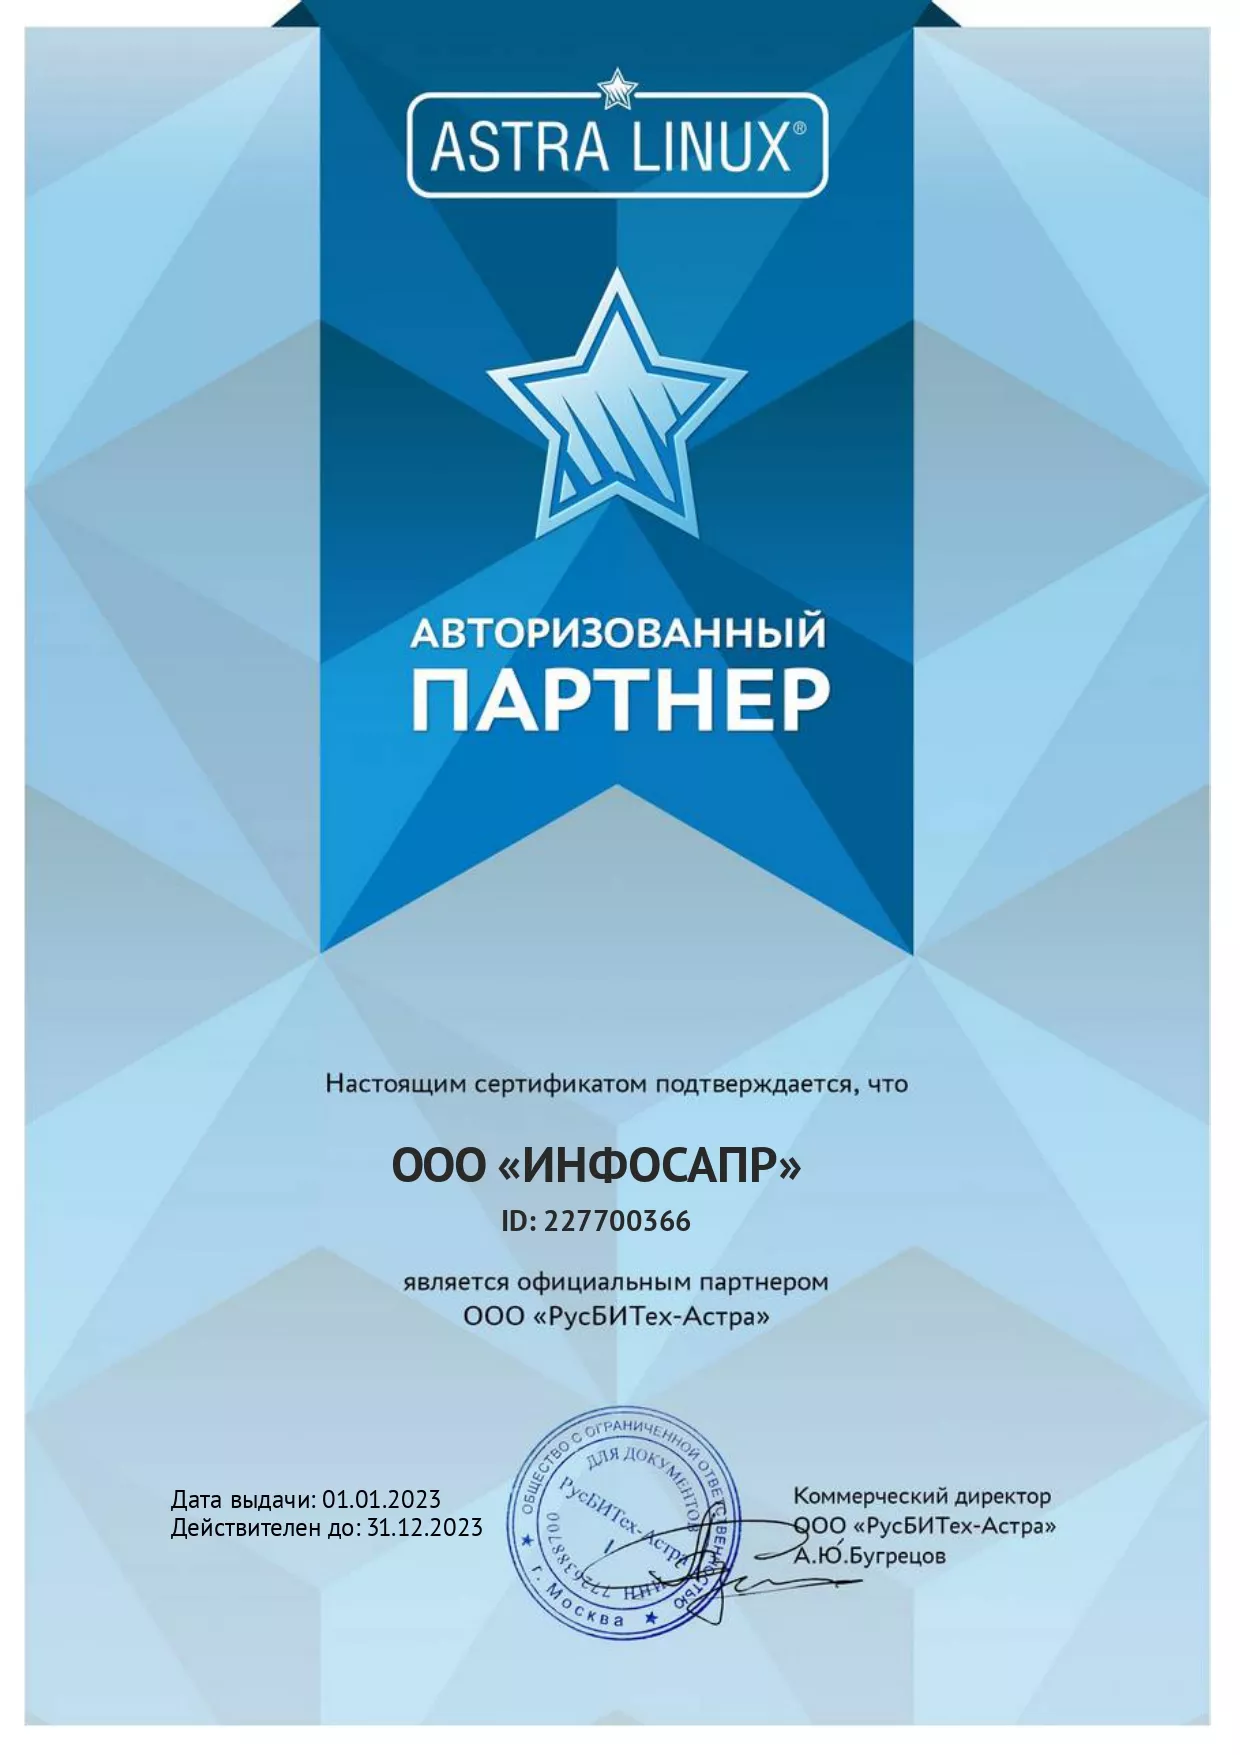 Сертификат Astra Linux ИнфоСАПР 2023